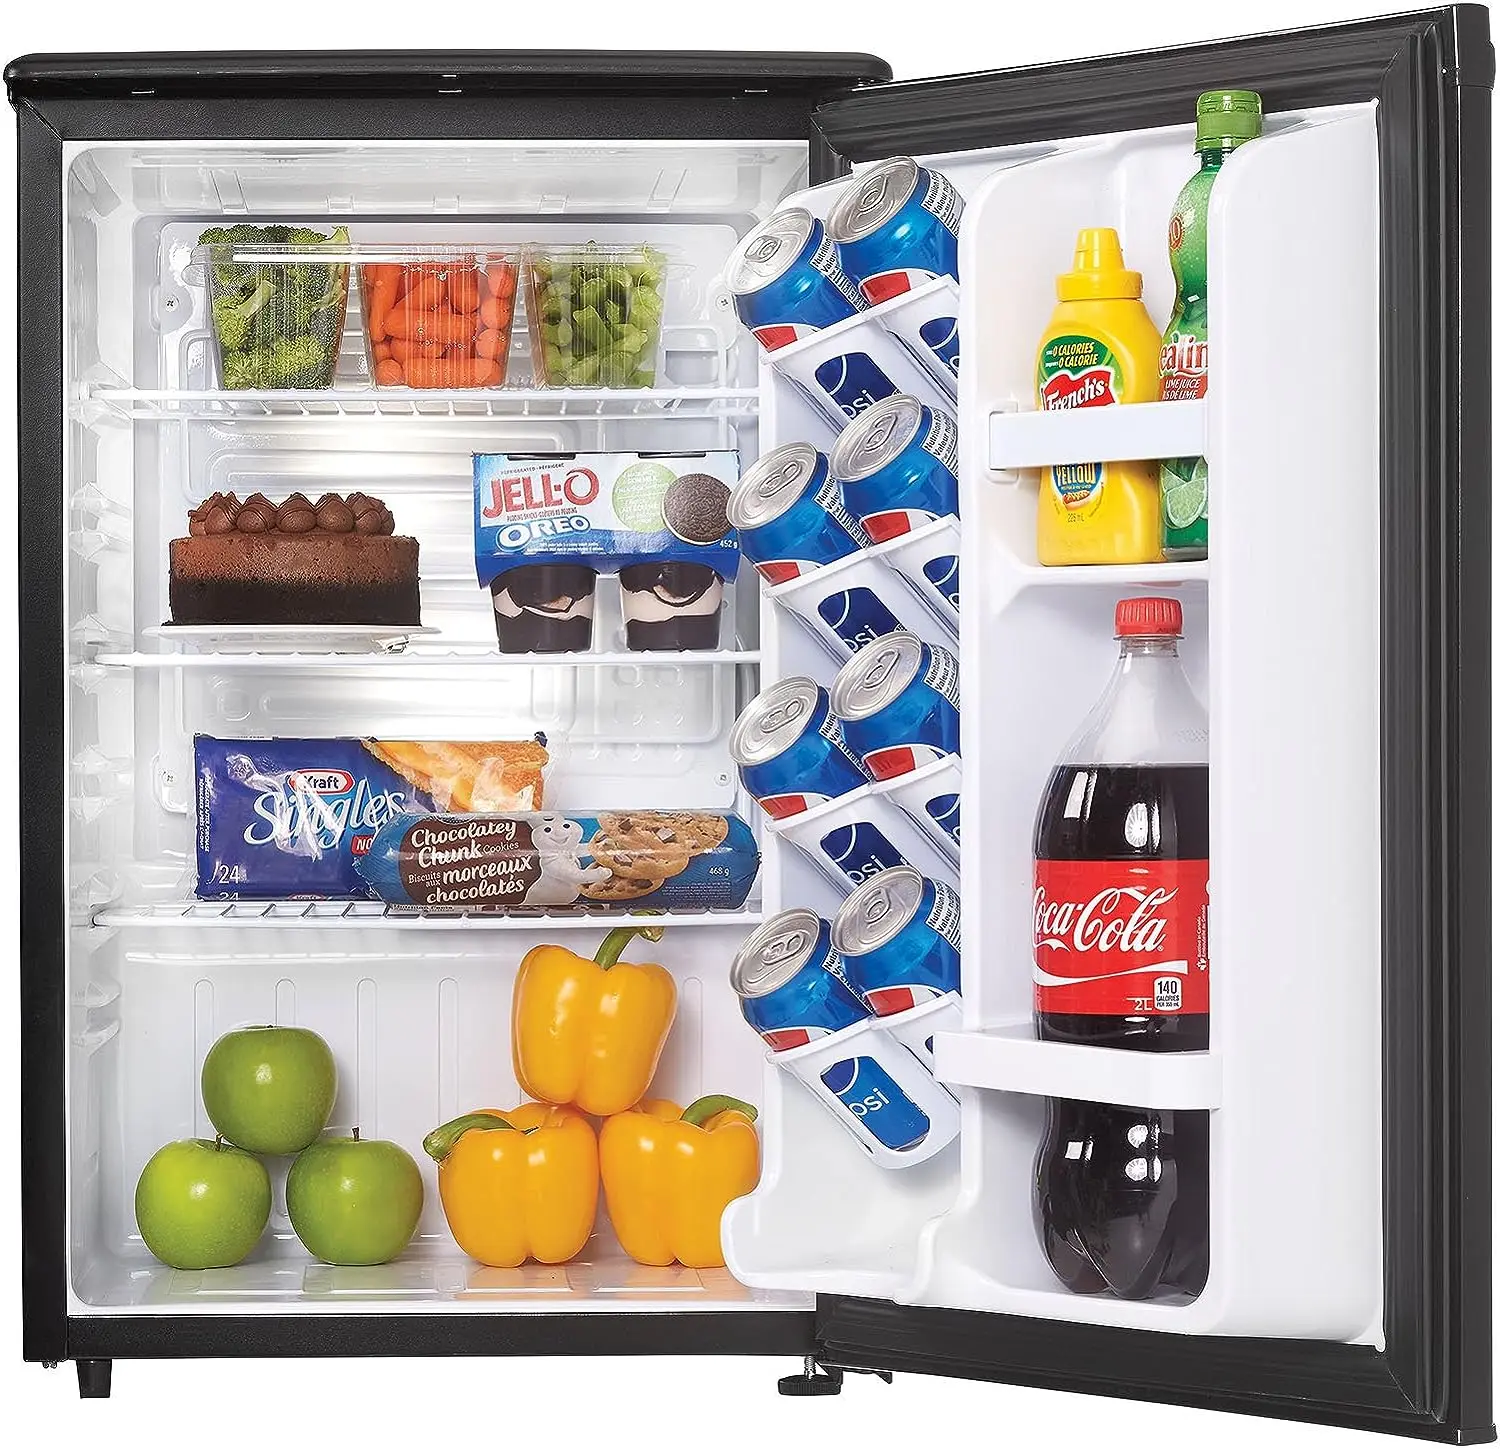 06 холодильник. Мини холодильник Mini Fridge. Холодильник компактный черный. Холодильник 2 дюйма. Холодильник 2,05.